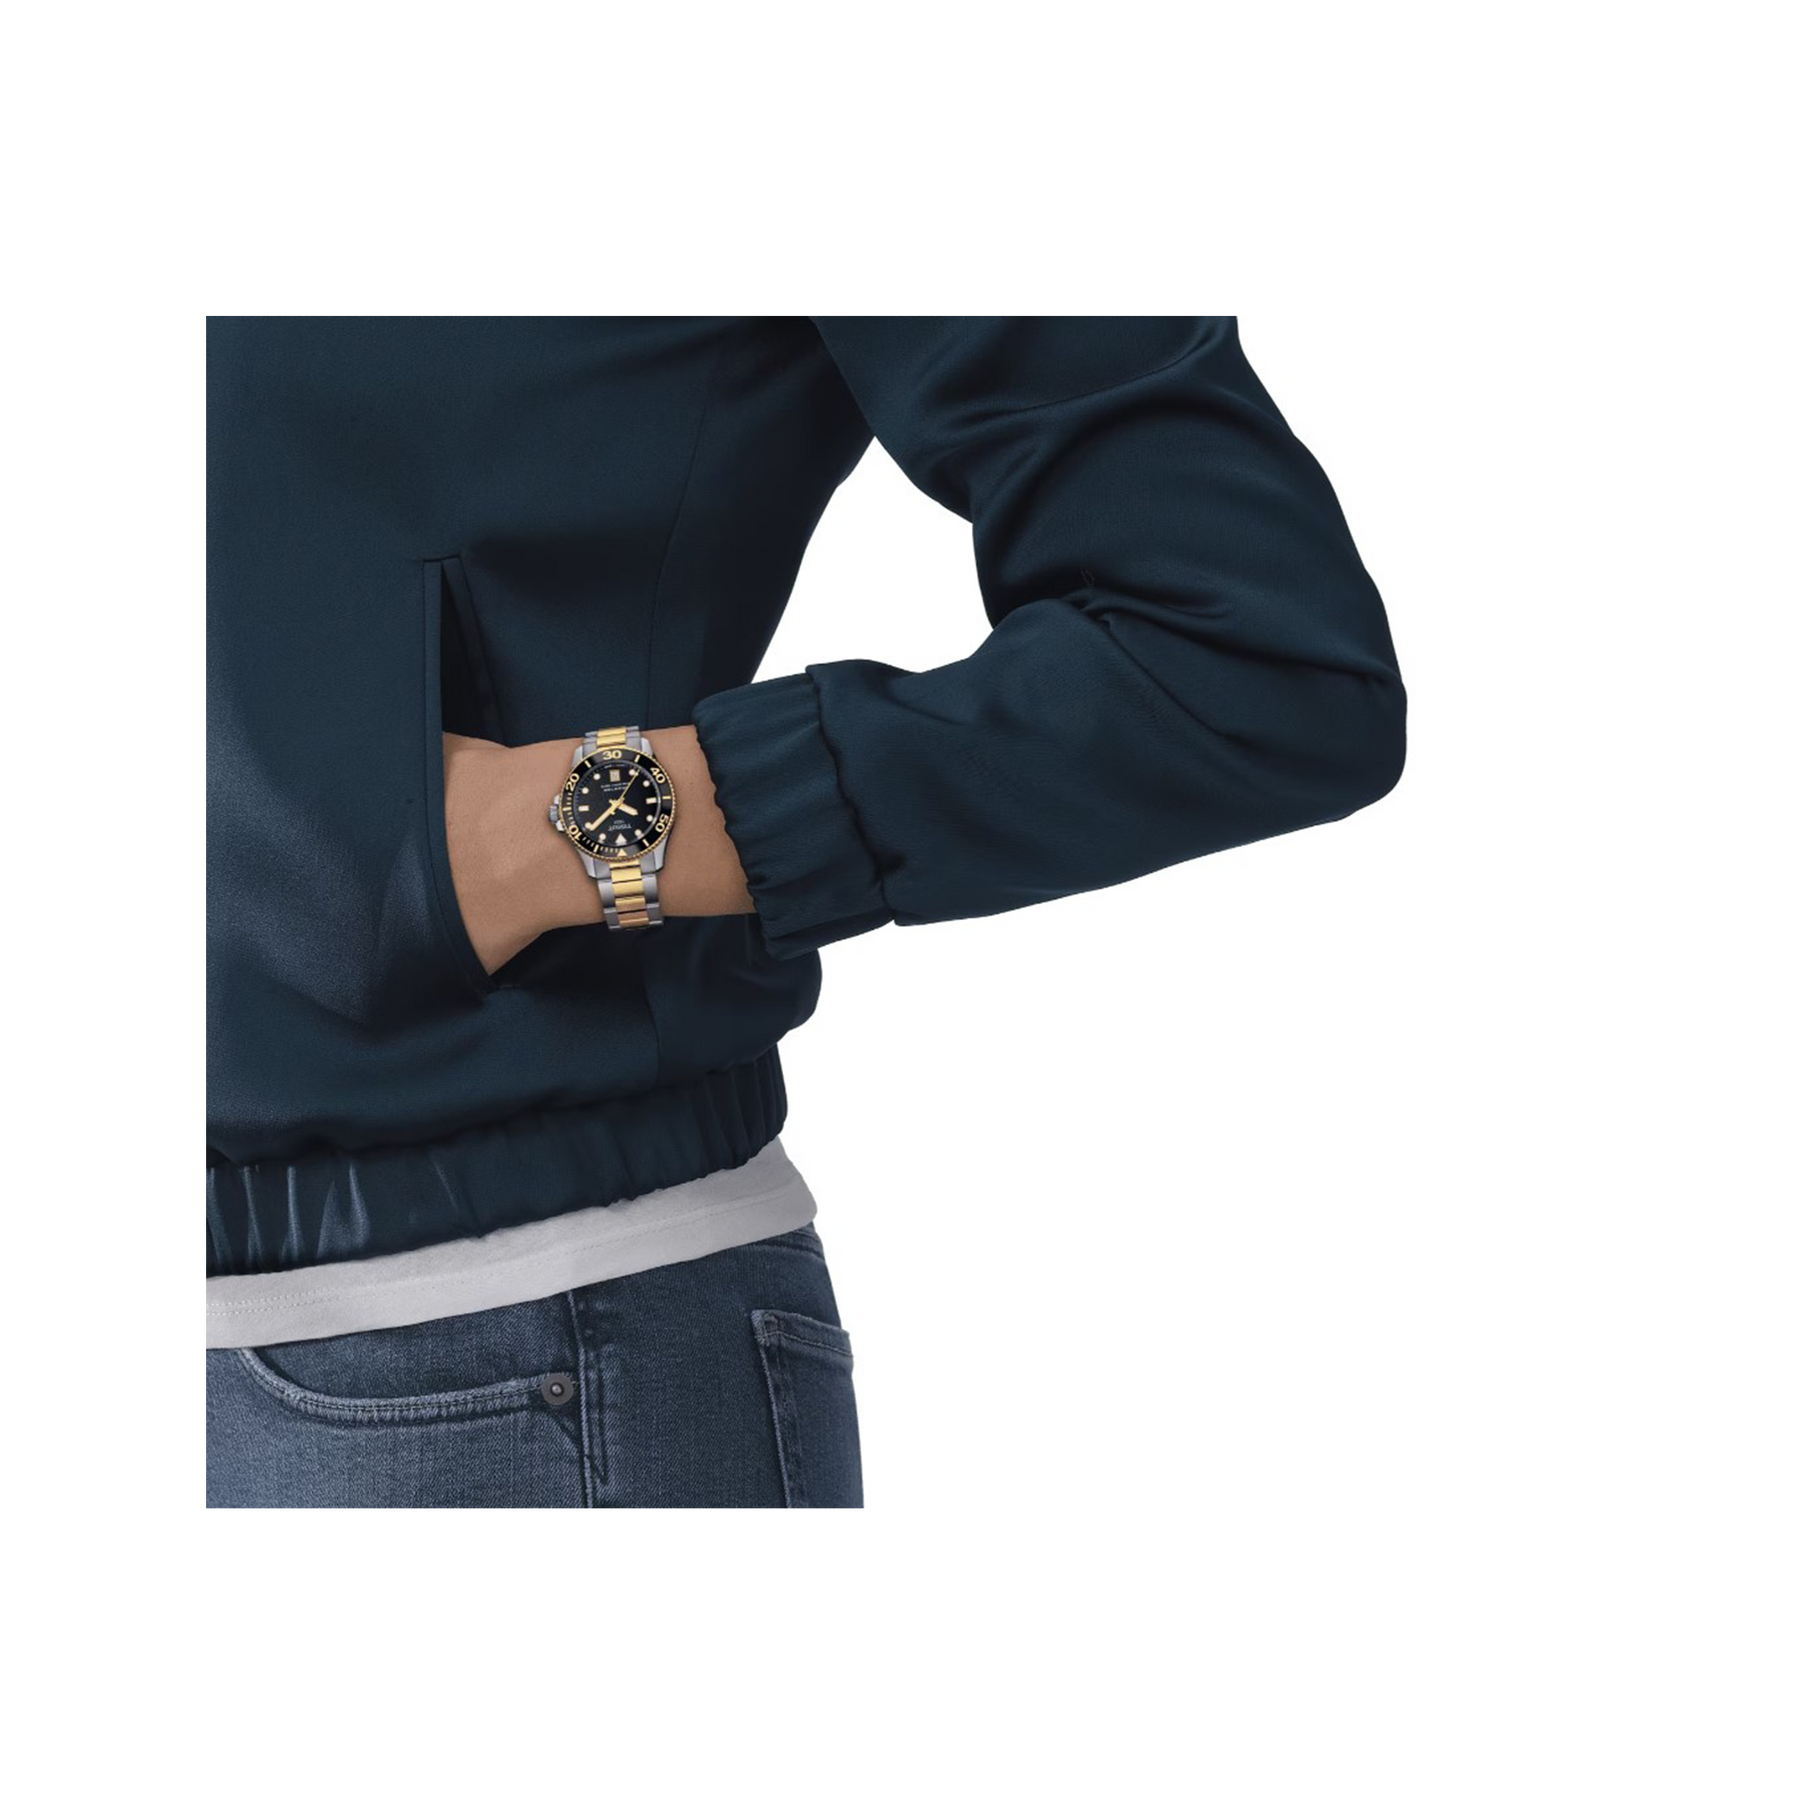 Tissot Seastar Quartz Women’s 36mm Watch T120.210.22.051.00